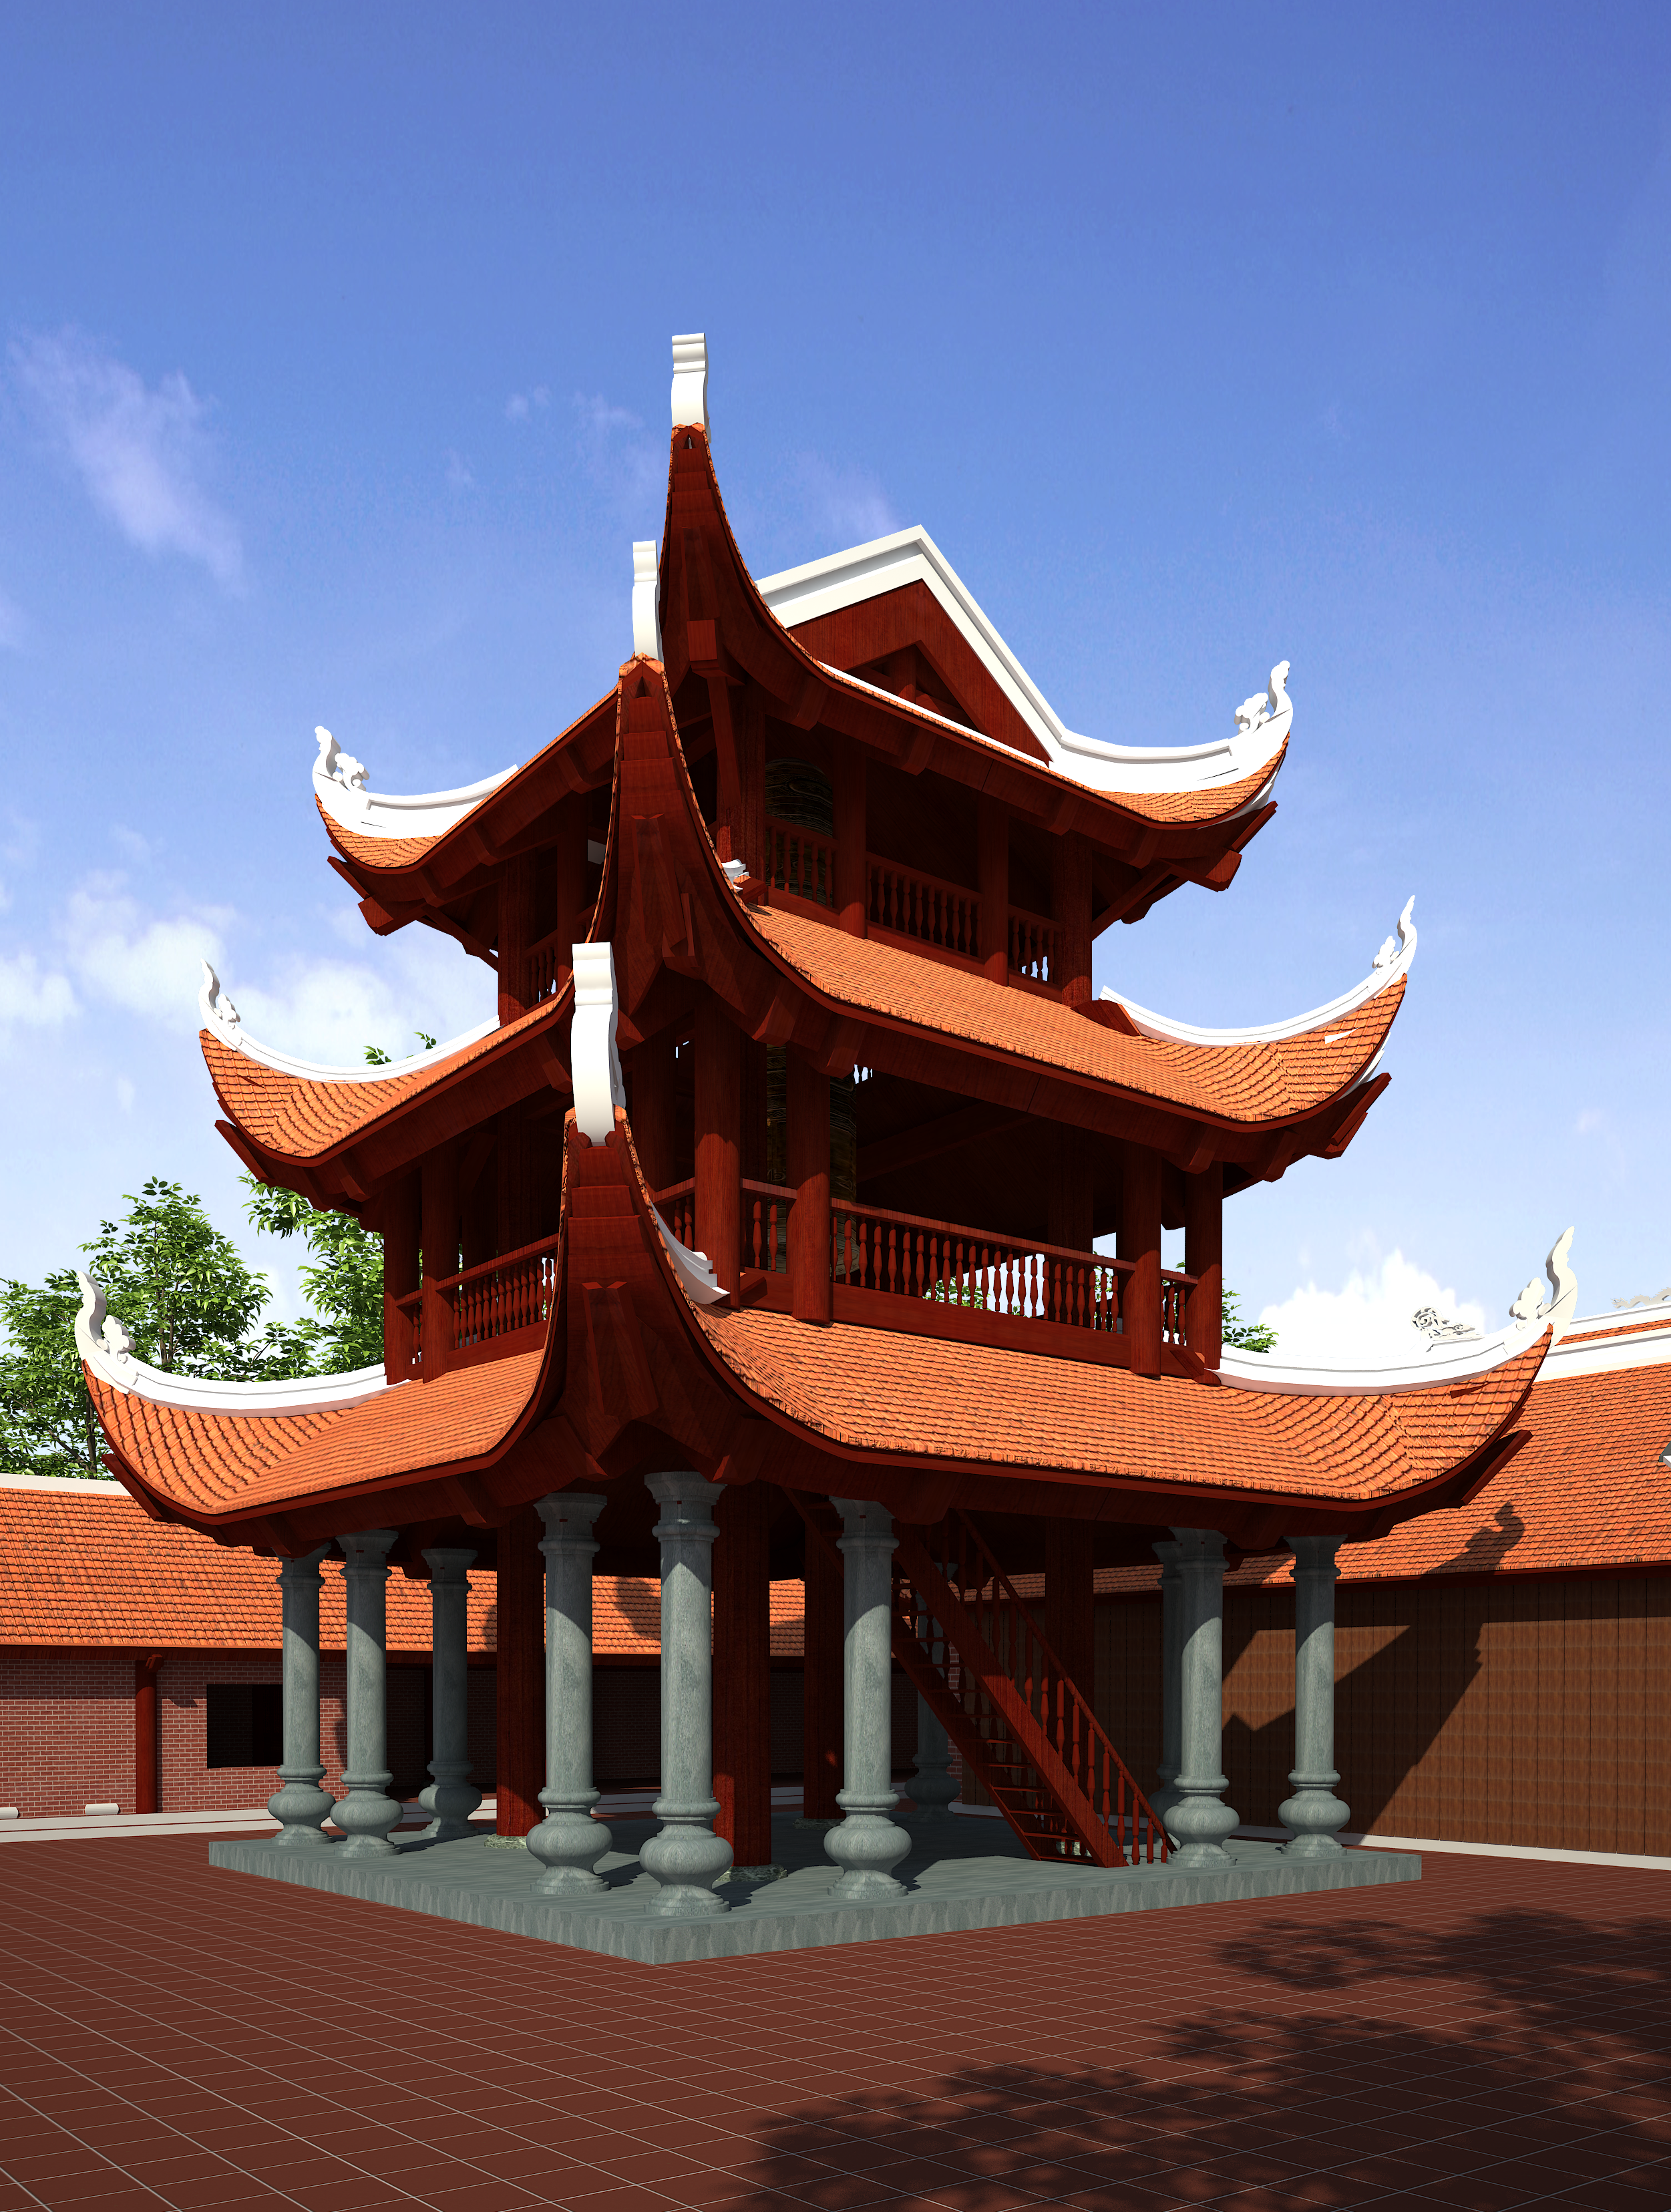 Tháp chuông – Tam Sơn